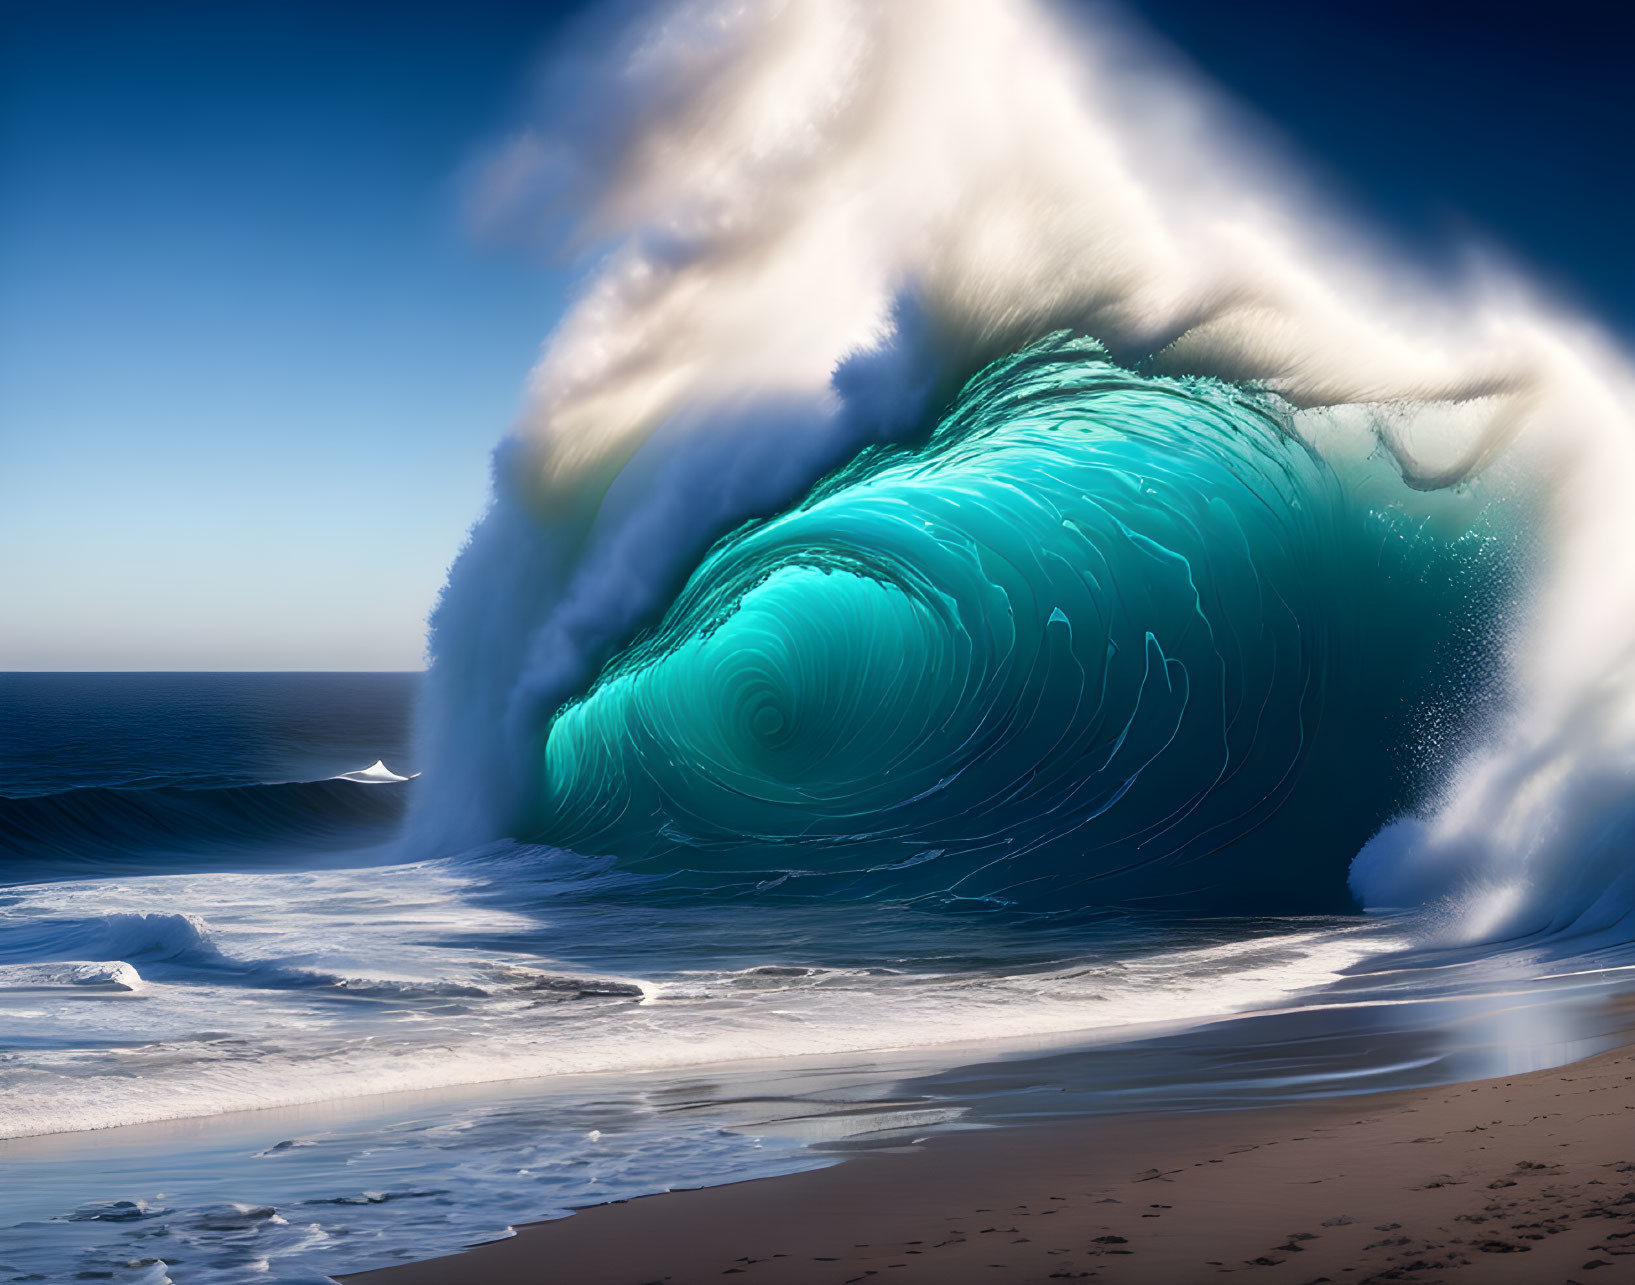 Surreal digital artwork: Massive wave on sandy beach with dreamlike sky